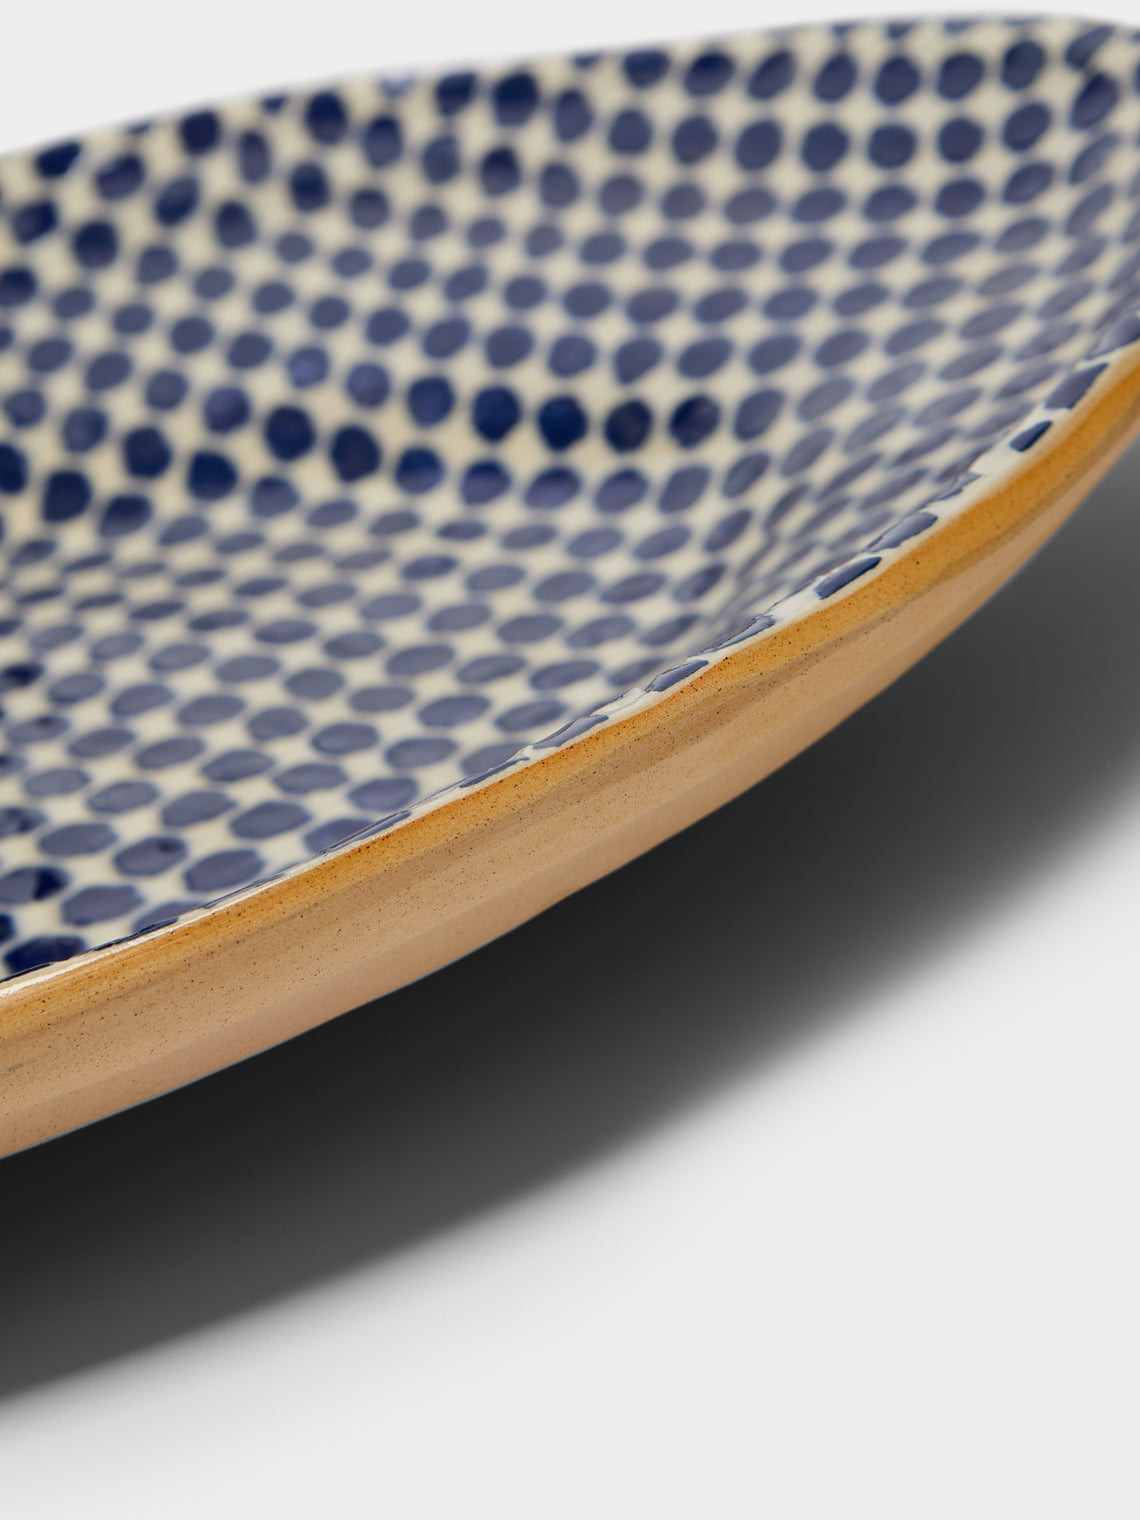 Terrafirma Ceramics - Hand-Printed Ceramic Banquet Platter -  - ABASK